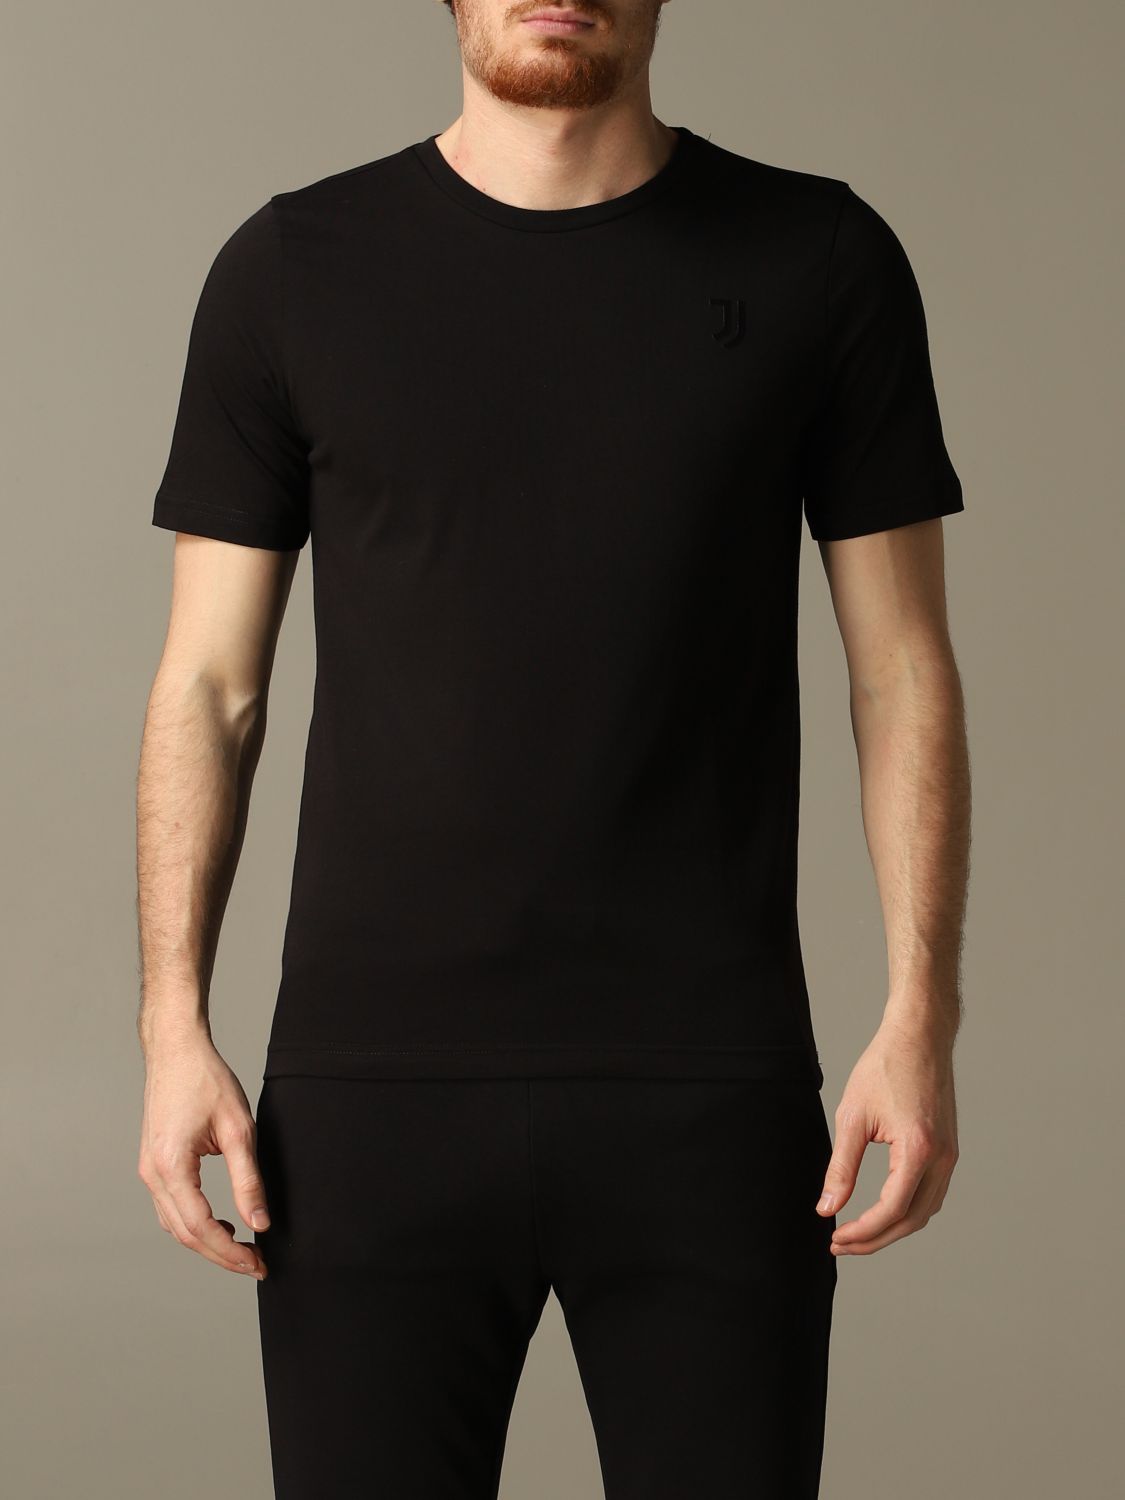 T-shirt Juventus Premium: Juventus Premium t-shirt for men black 1